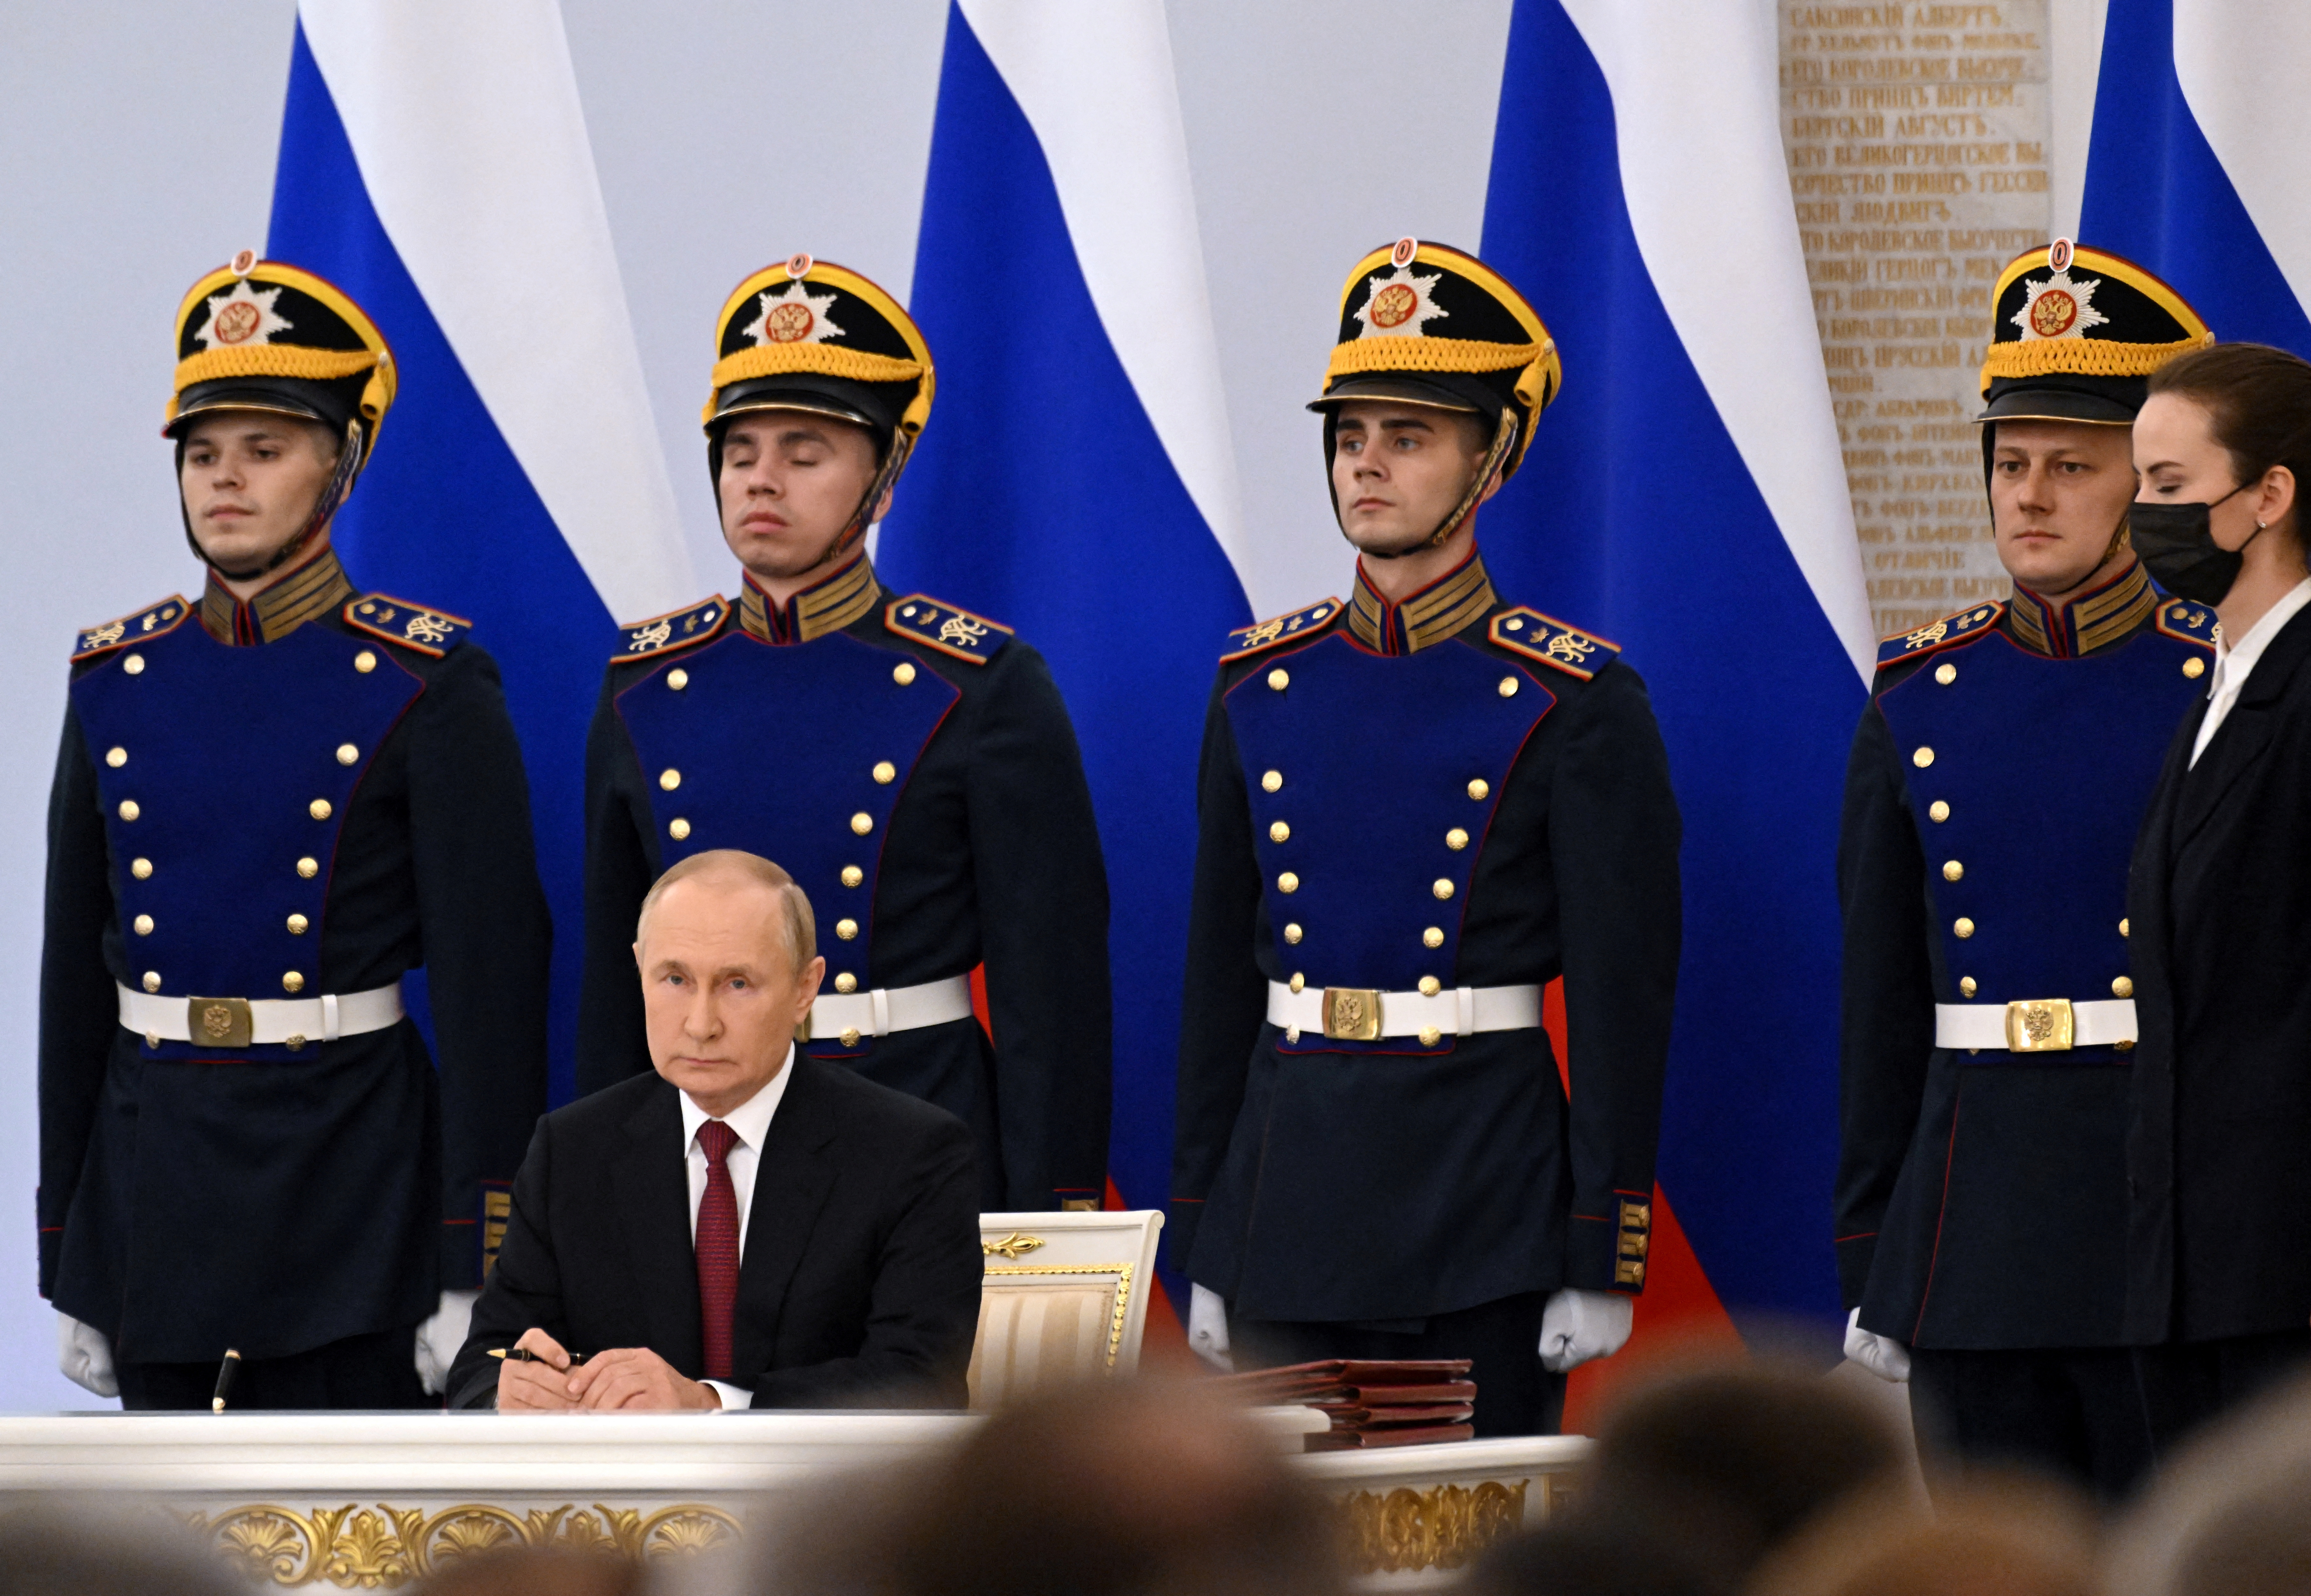 Vladimir Putin en el acto de anexión de regiones (Sputnik/Grigory Sysoyev/Pool via REUTERS)